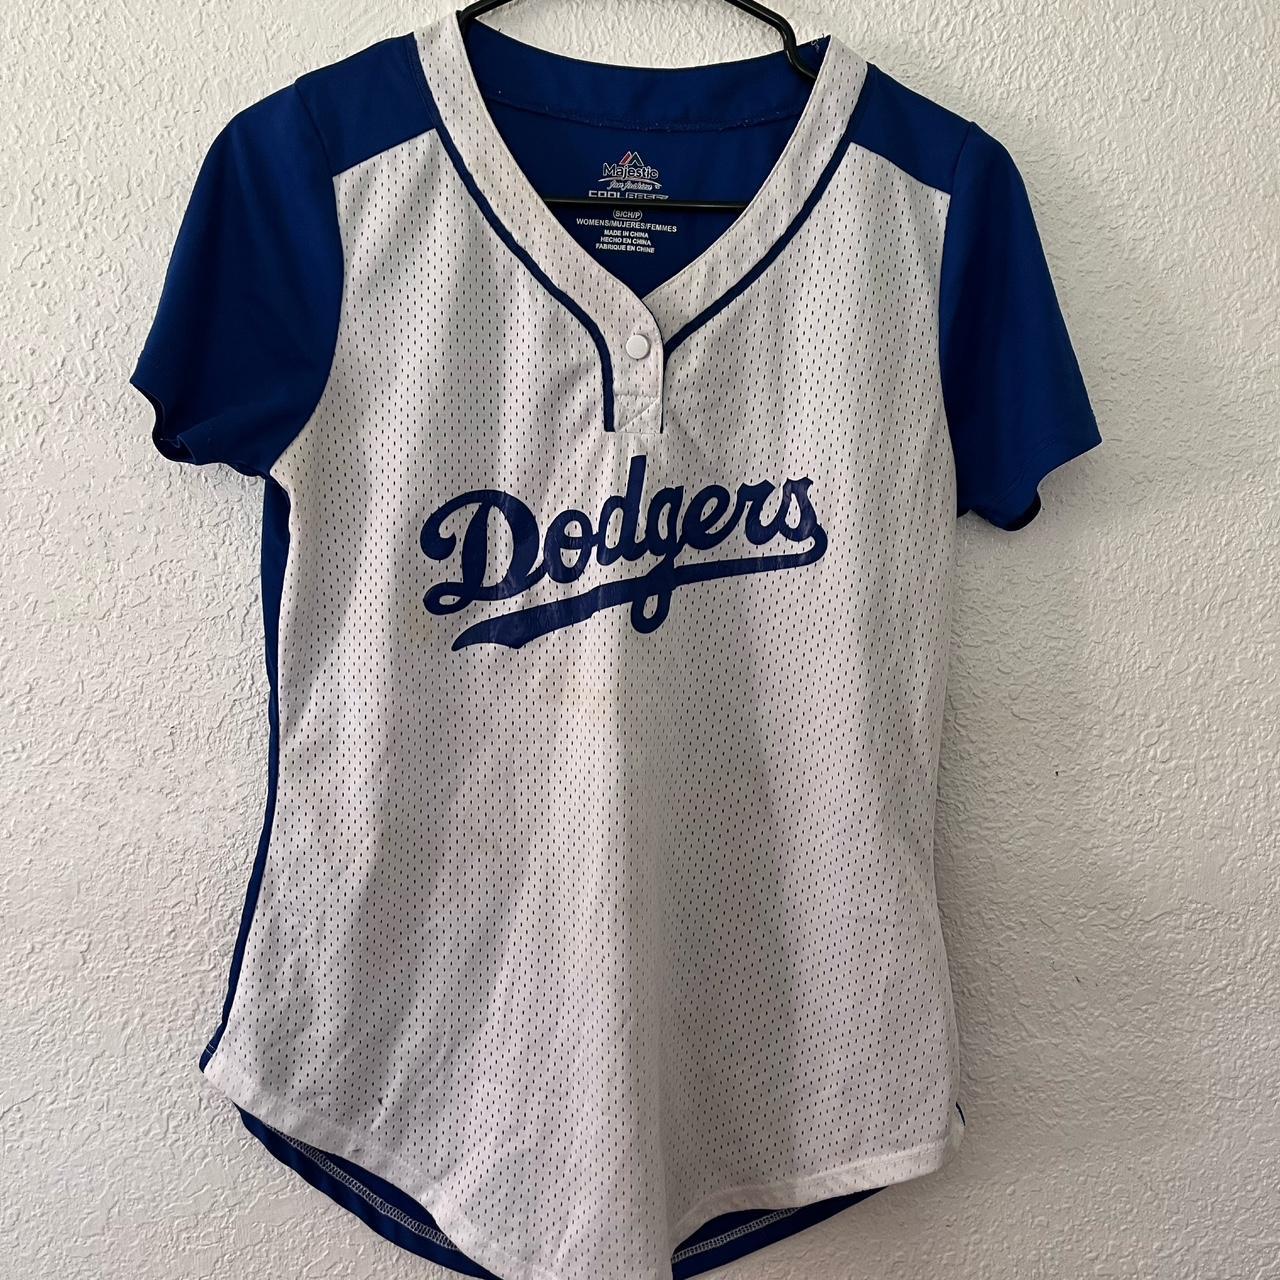 Women's Los Angeles Dodgers Majestic Vneck Jersey - Depop